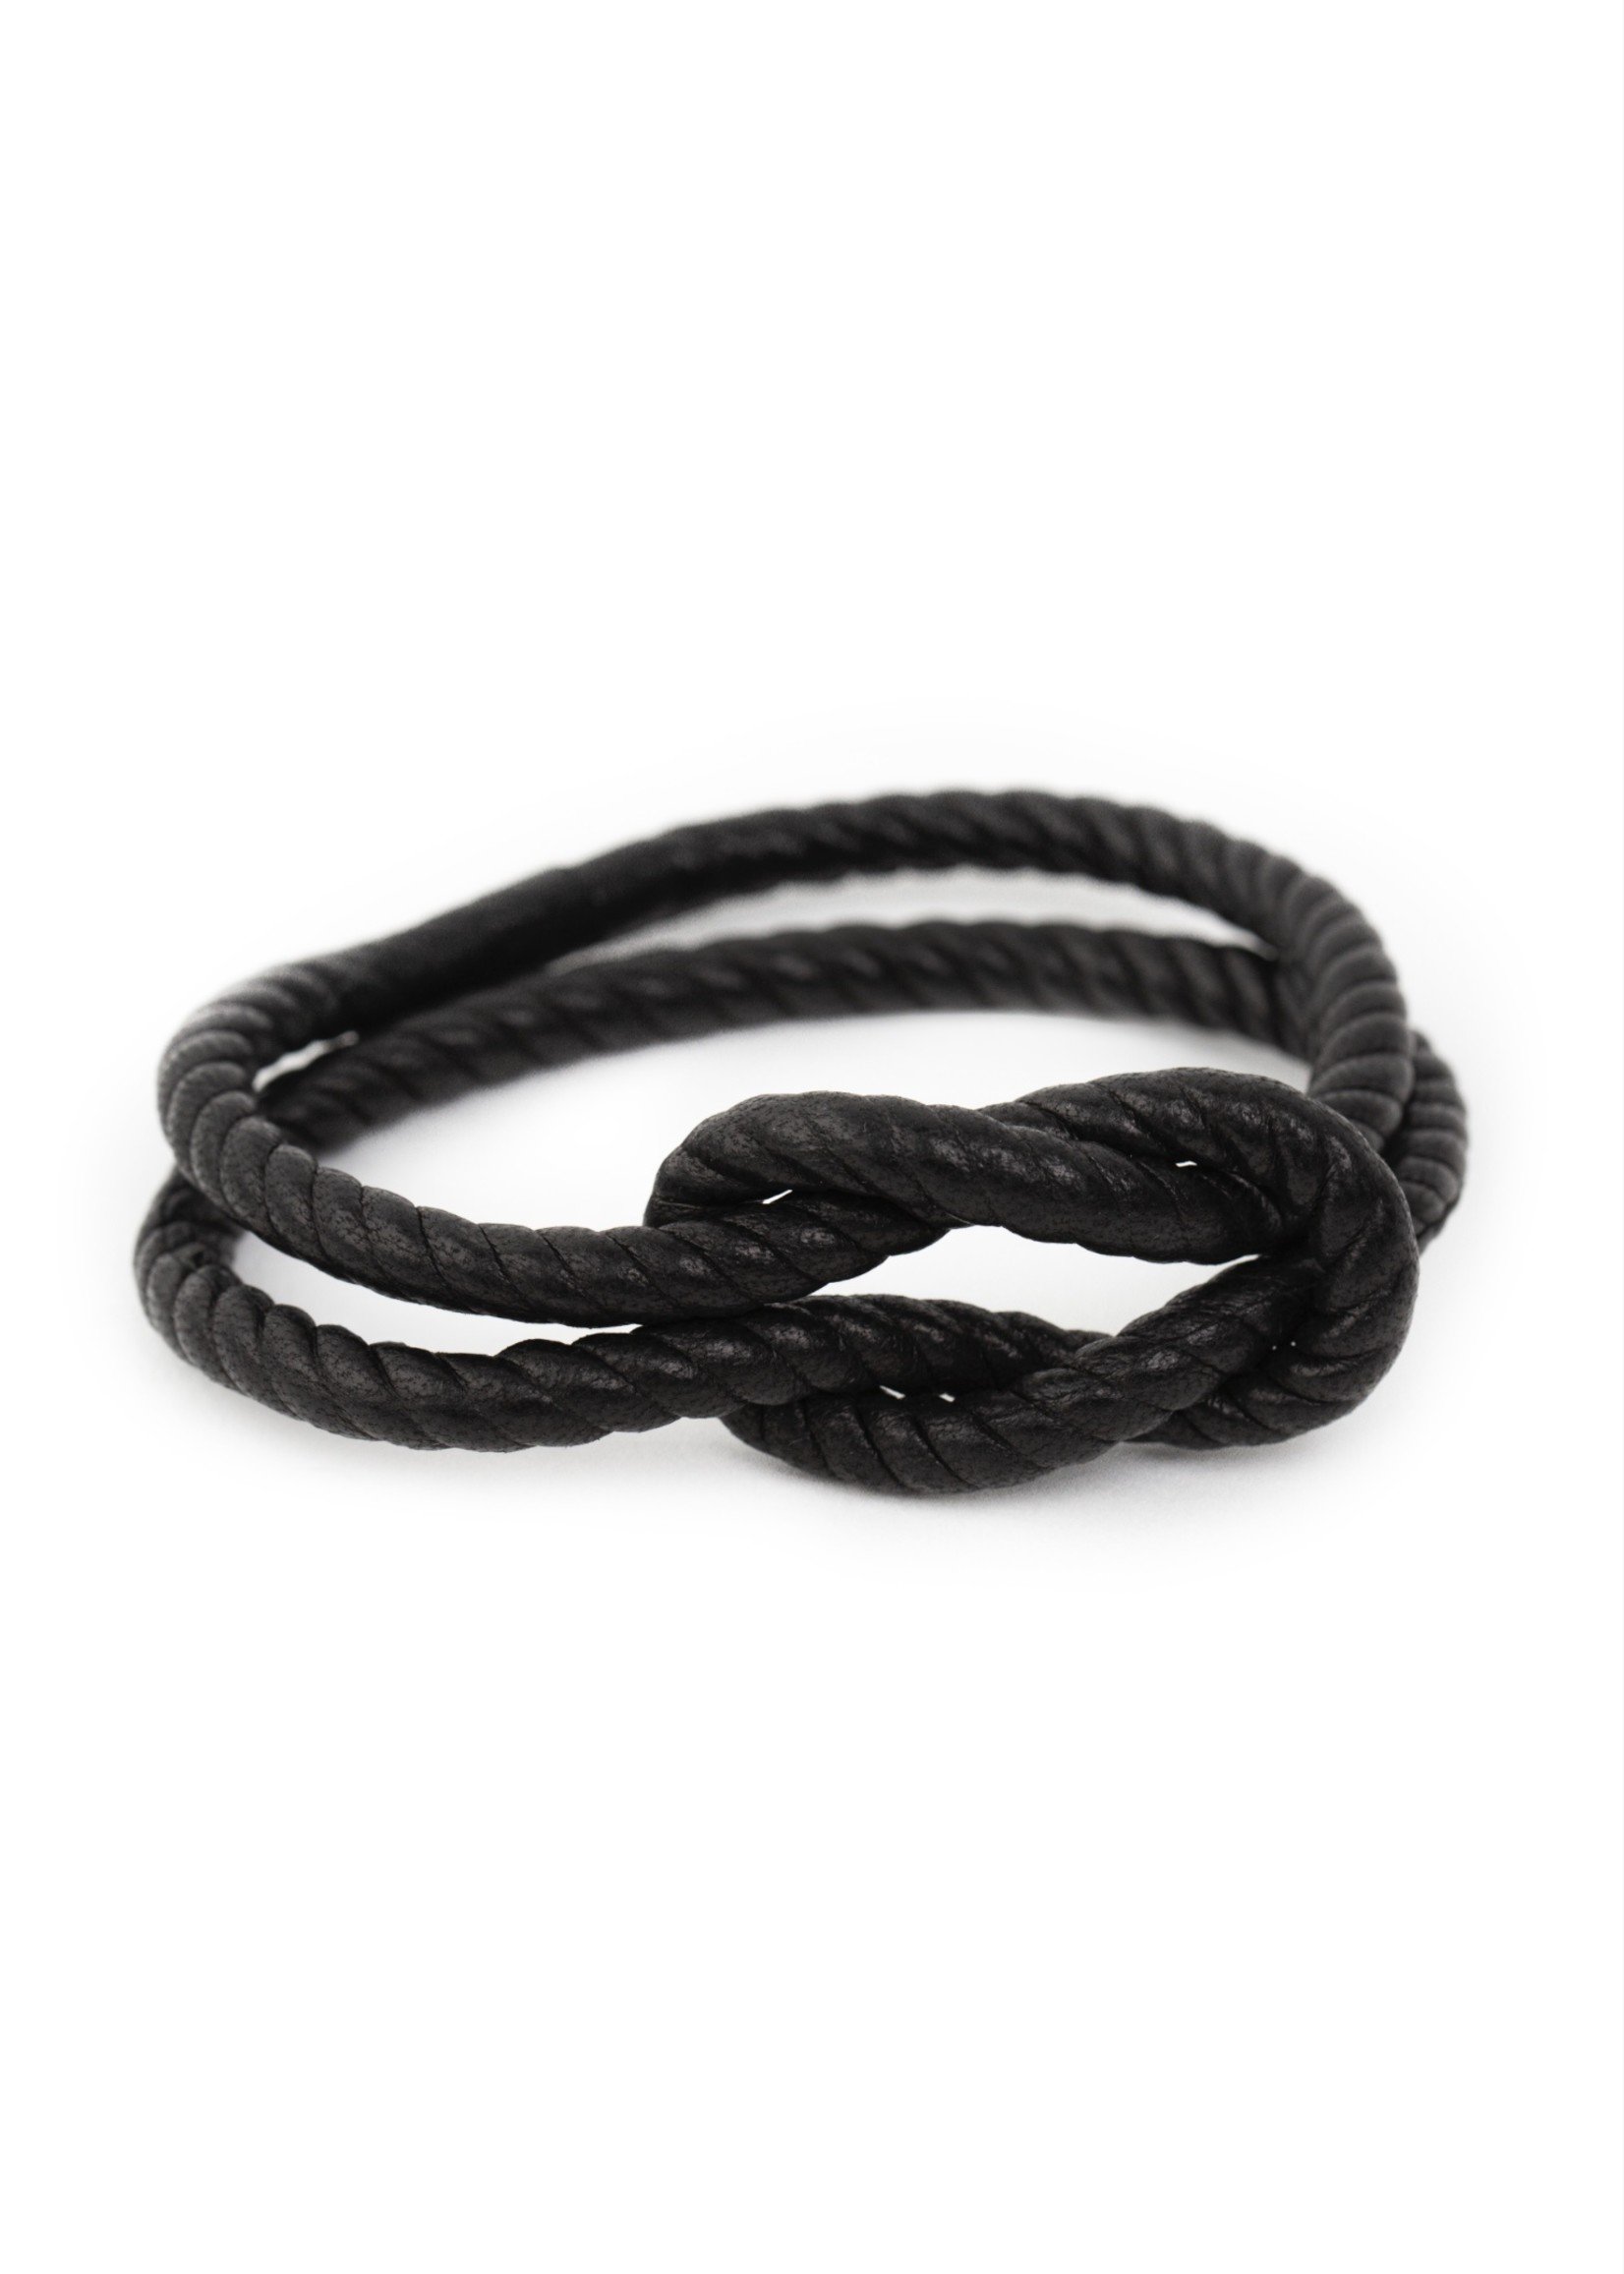 https://cdn.shoplightspeed.com/shops/615307/files/45449829/1652x2313x1/leather-wrapped-rope-bracelet.jpg